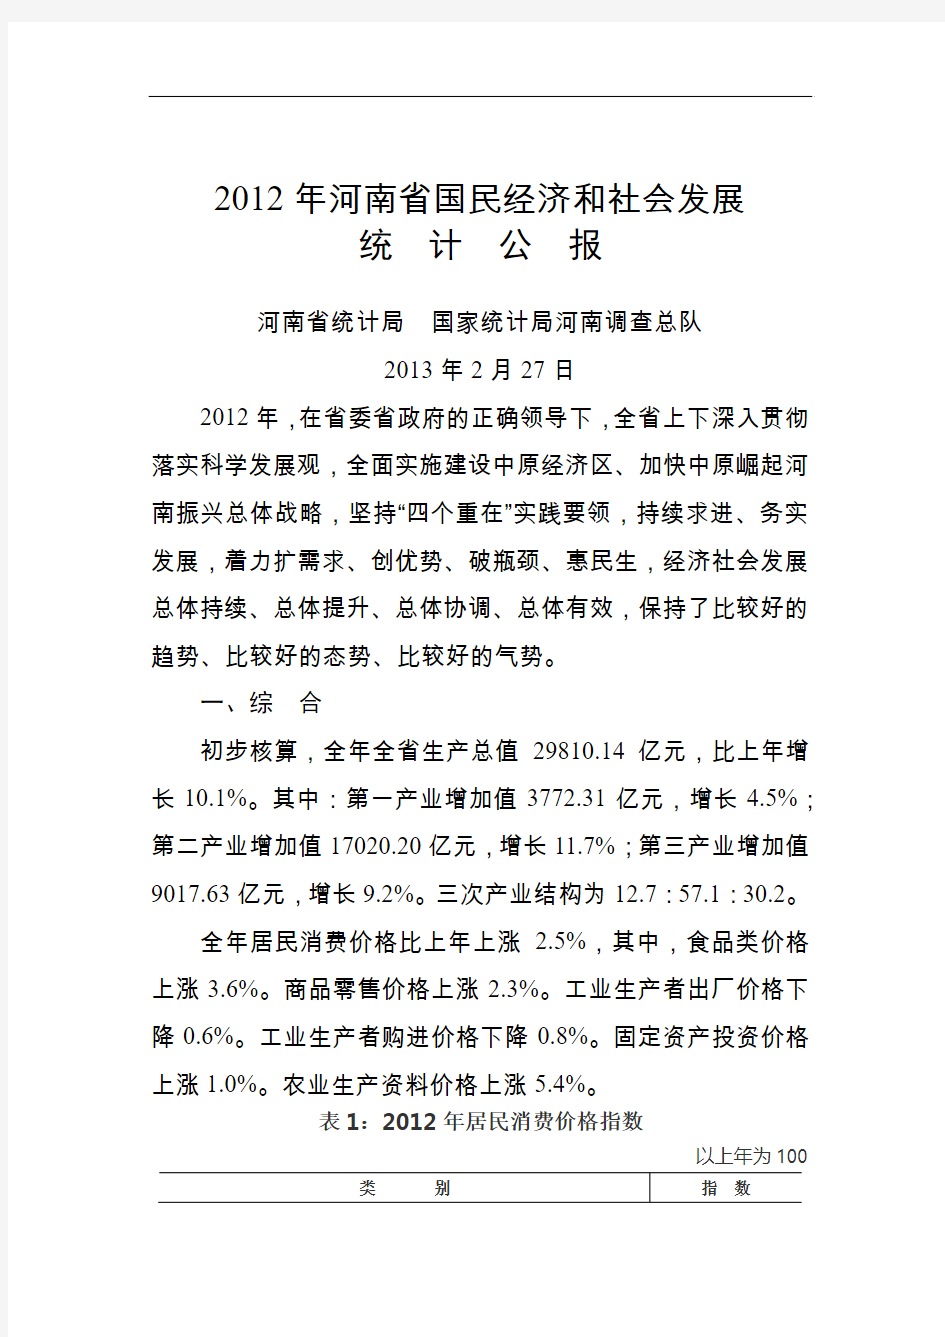 2012年河南省国民经济和社会发展统计公报